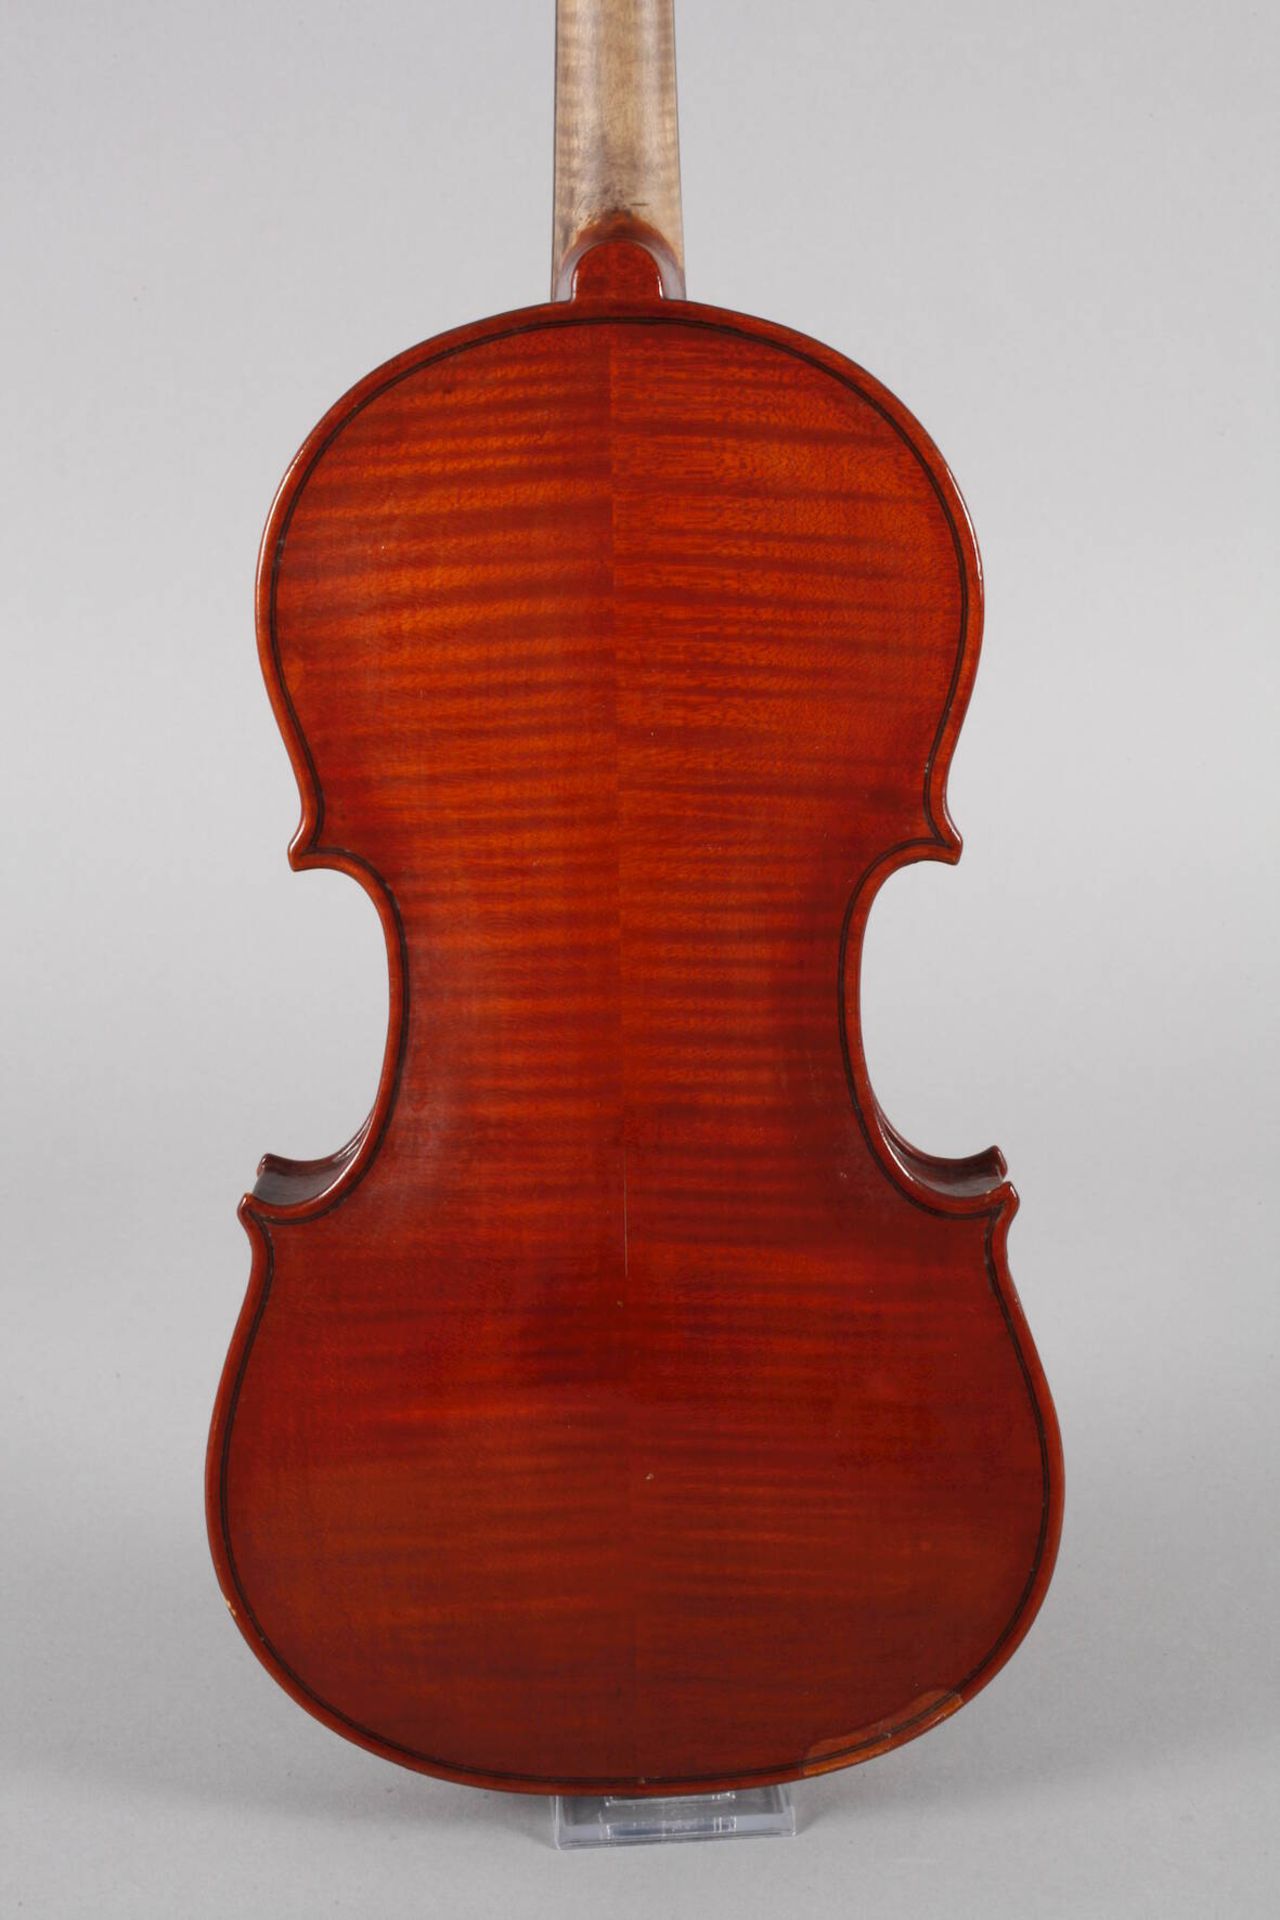 Violine Luigi Amici innen auf Klebezettel signiert Luigi Amici Roma 1925, geteilter, sehr - Image 3 of 7